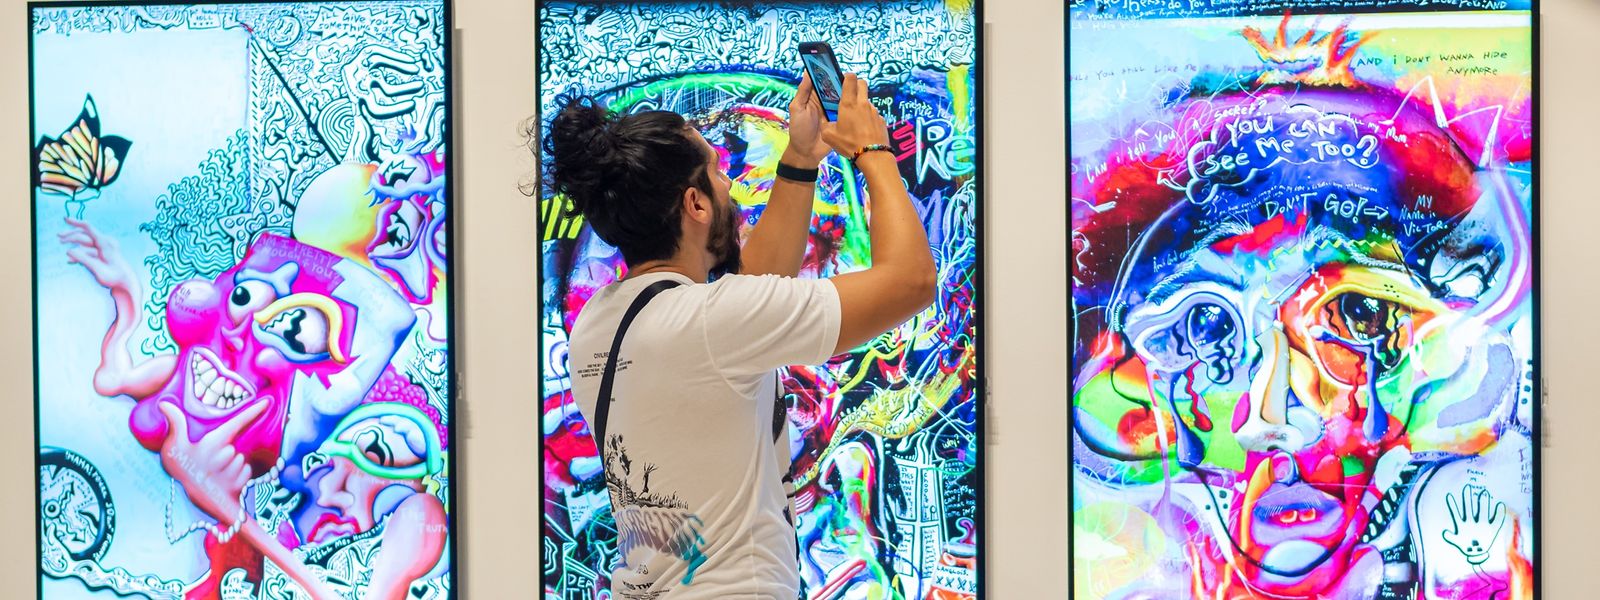 Der Kunstmarkt wird digitaler und öffnet sich damit auch einem breiteren Publikum. 